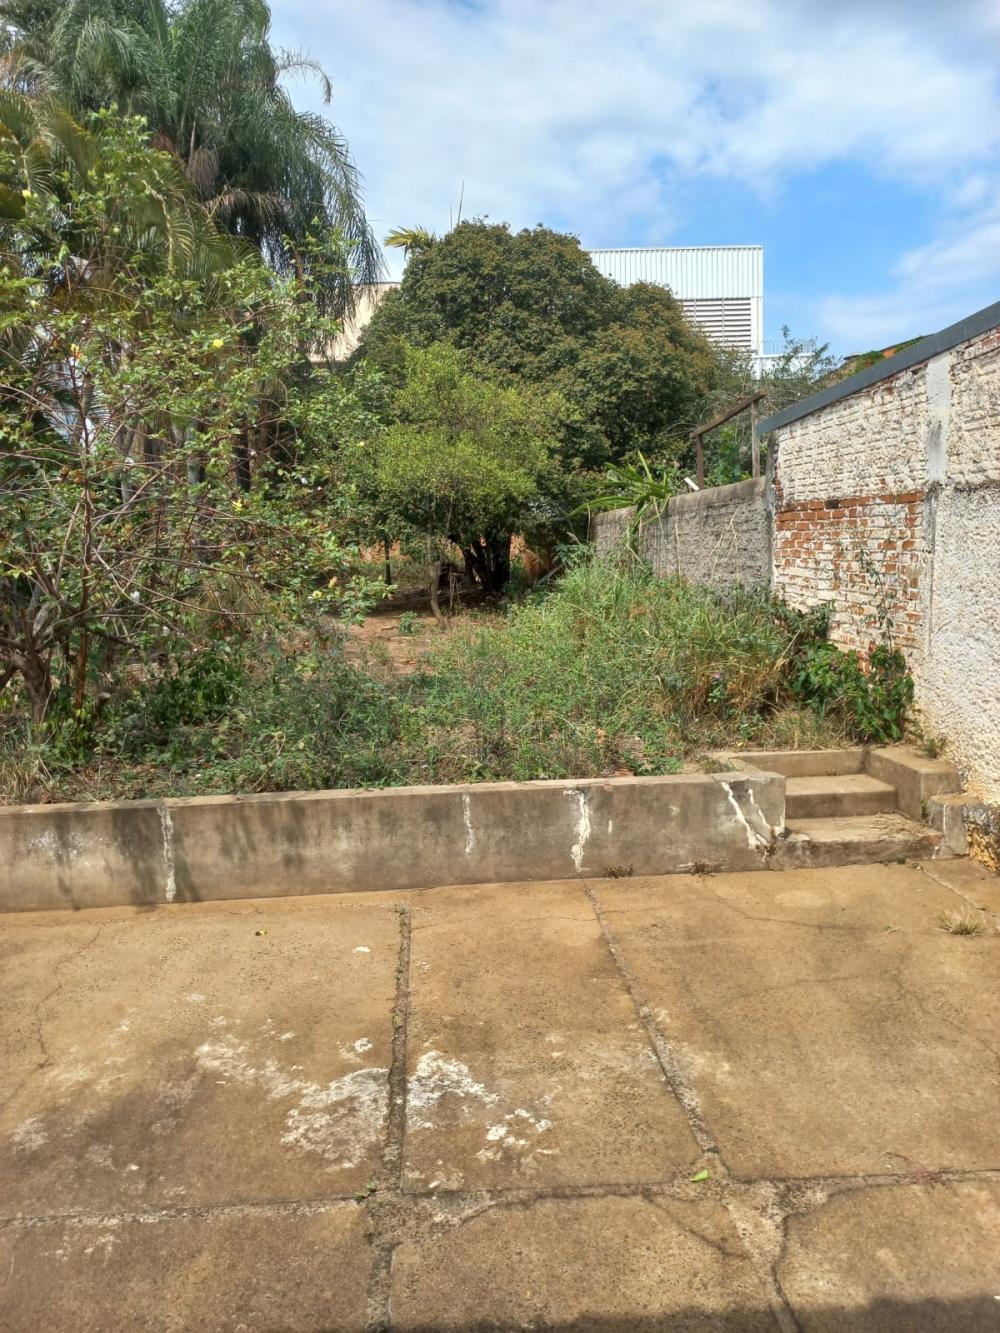 Casa em Excelente Bairro - Vila Monteiro contendo 500m2 de terreno e 140m2 de construção, casa térrea com sala, cozinha , 03 dormitórios ,02 banheiros. Amplo Quintal. Estuda financiamento.